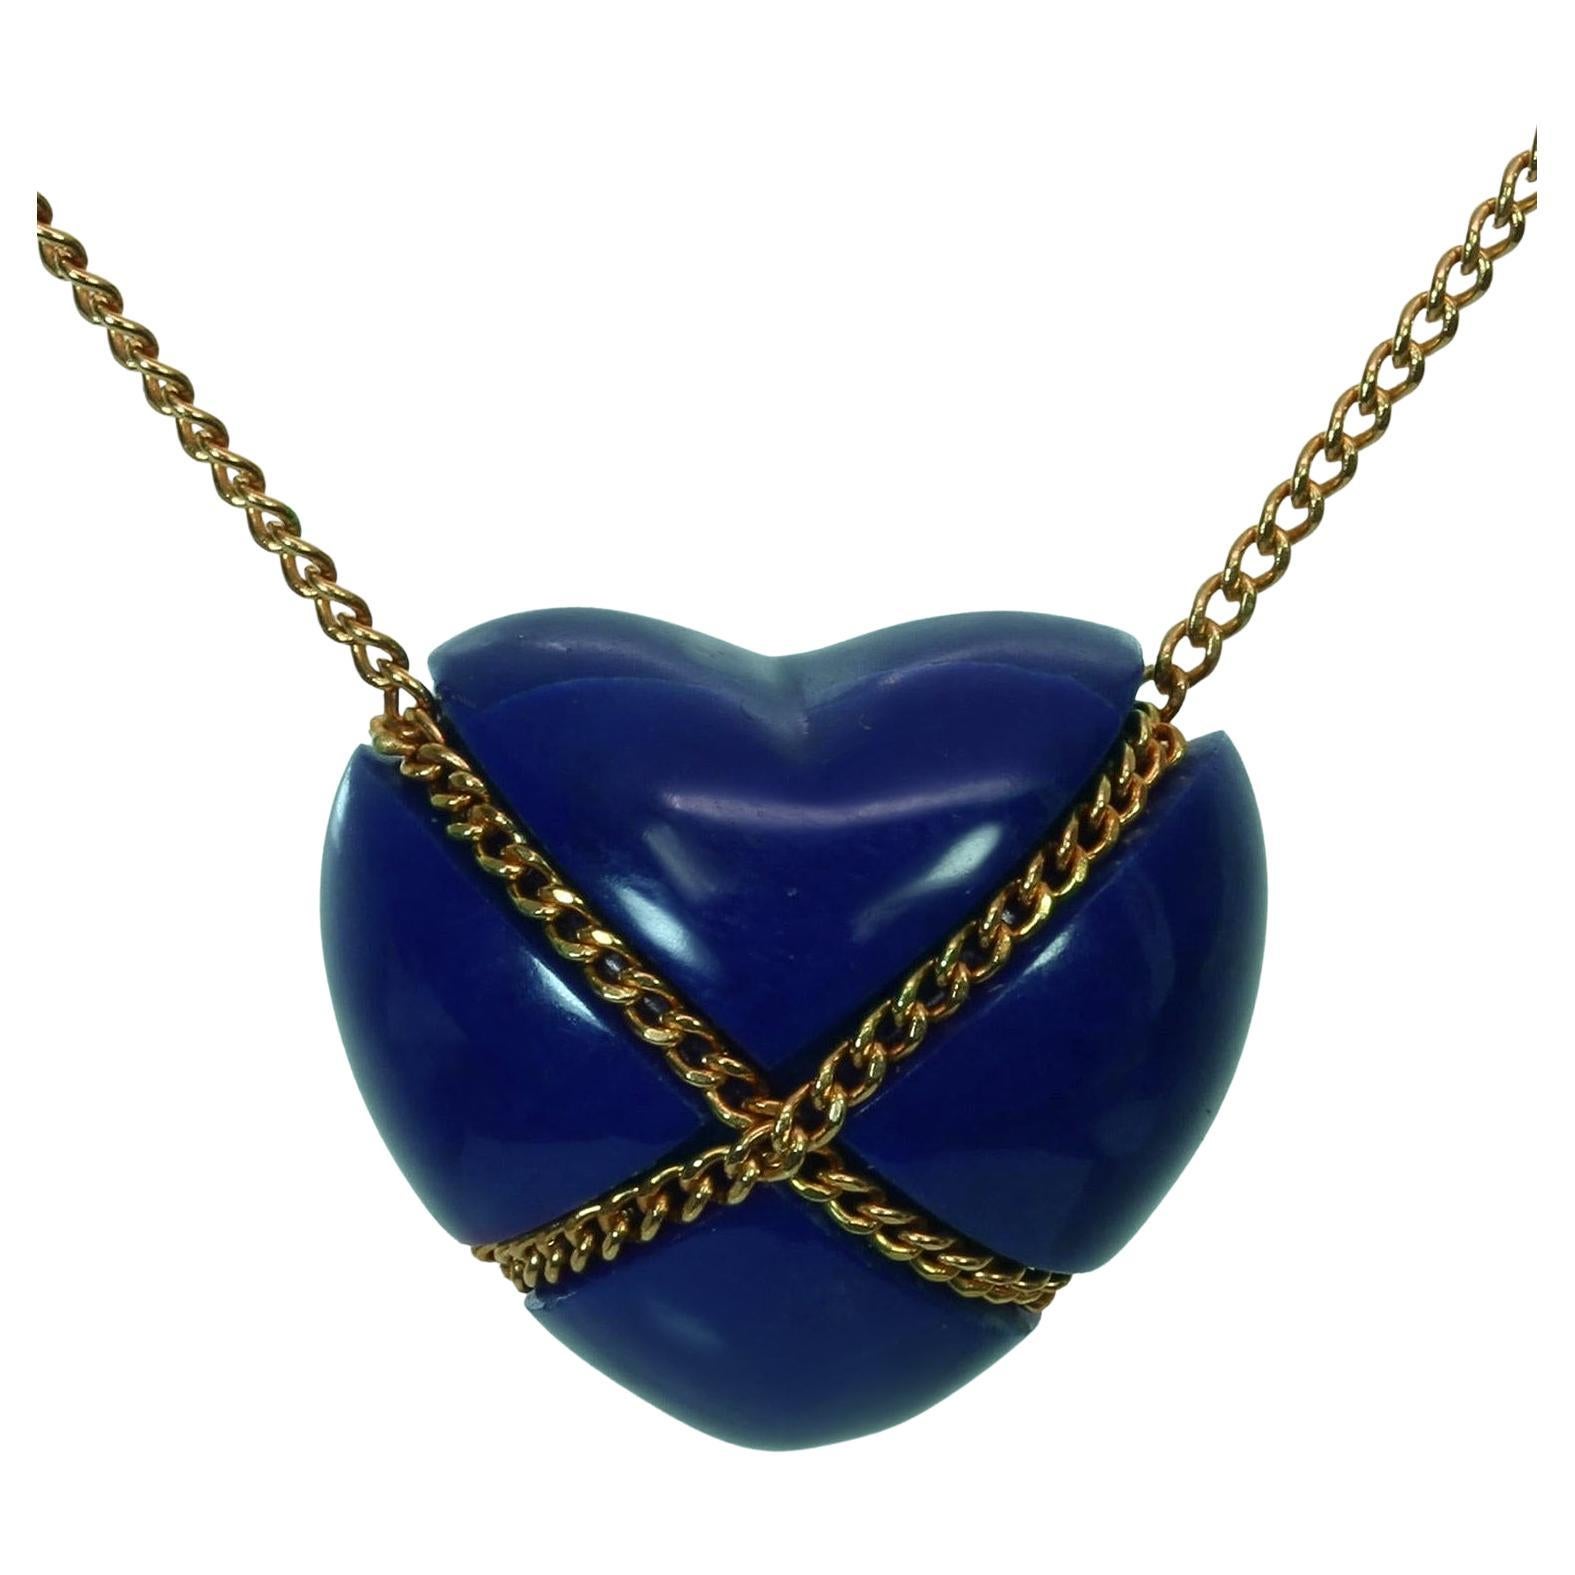 Tiffany & Co. Collier pendentif en forme de cœur croisé en or jaune 18 carats et lapis-lazuli